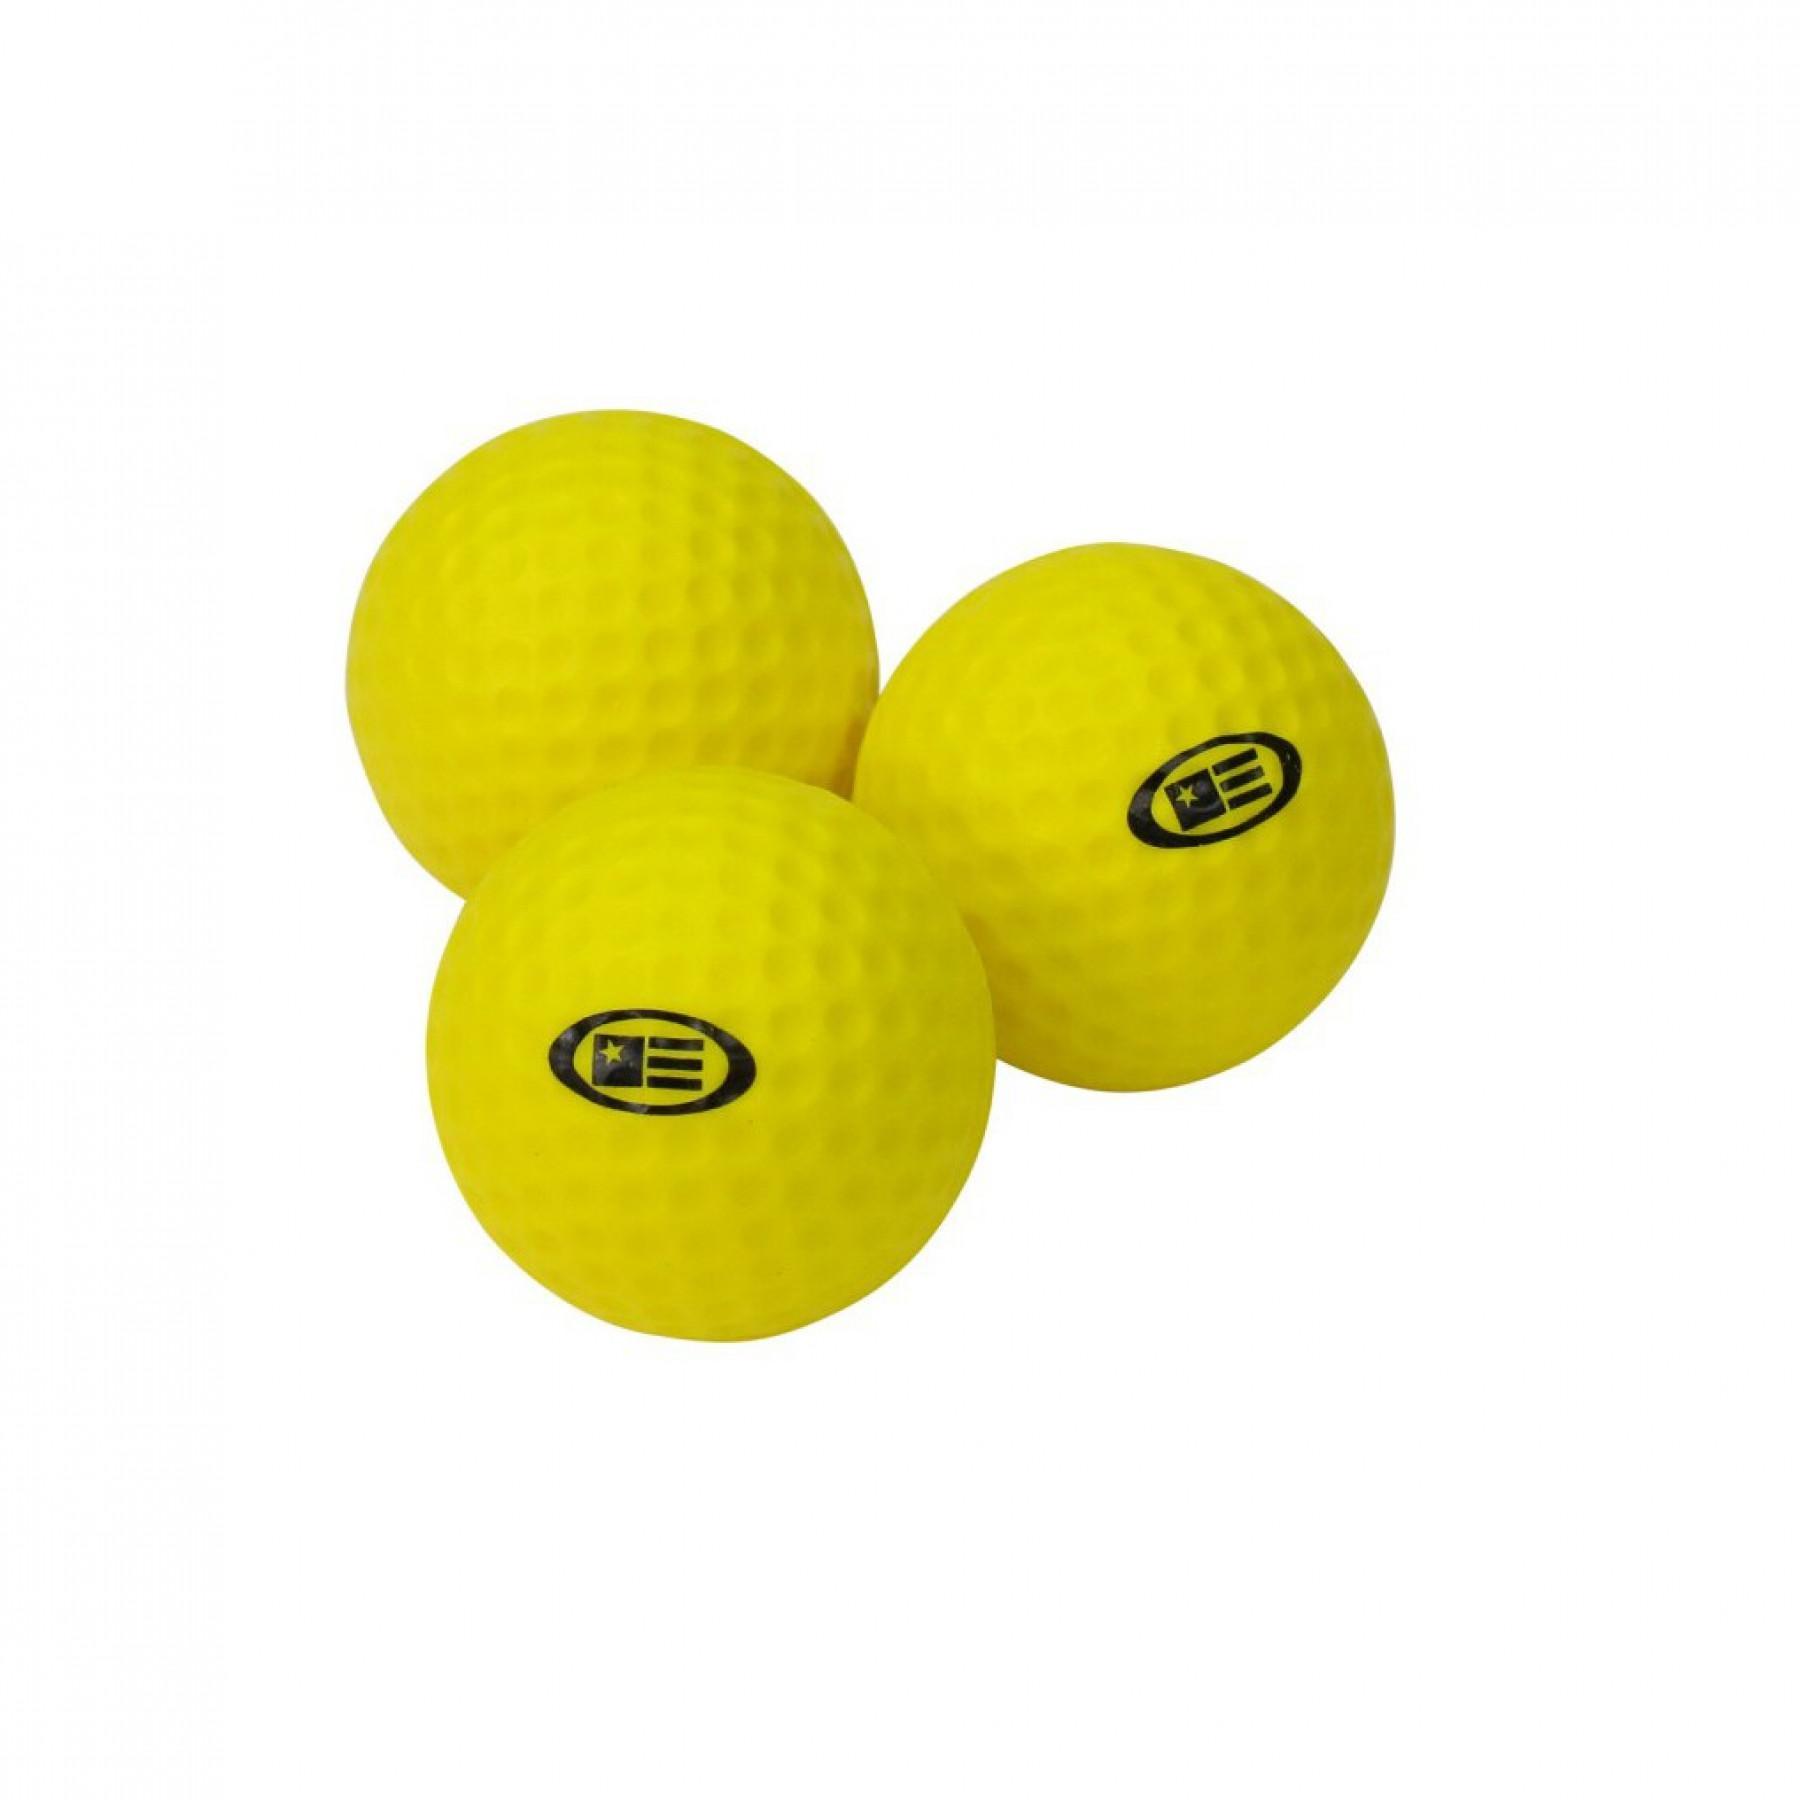 Pack de 12 balles mousse U.S Kids Golf